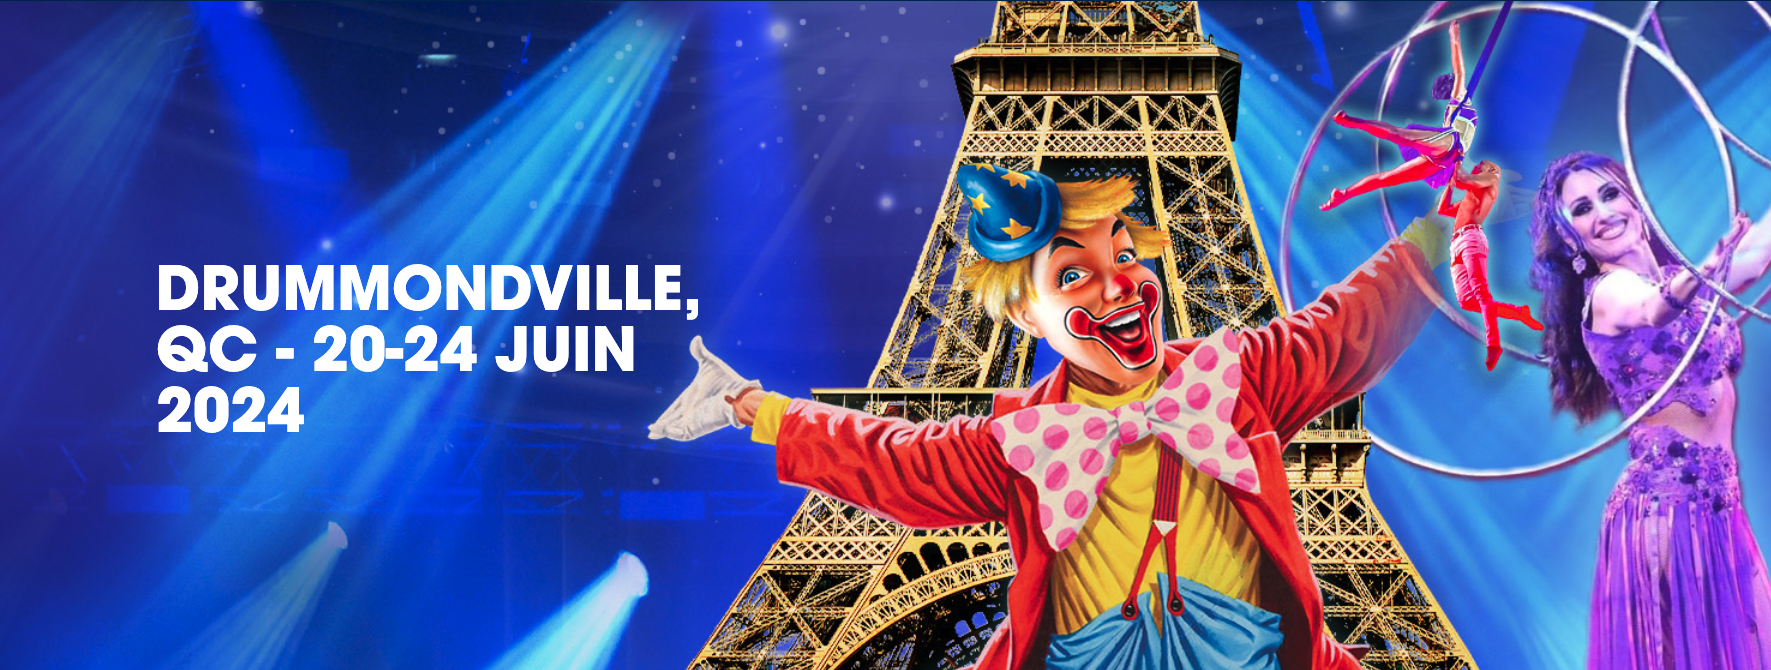 Le Cirque de Paris offre un spectacle enchanteur aux familles à Drummondville